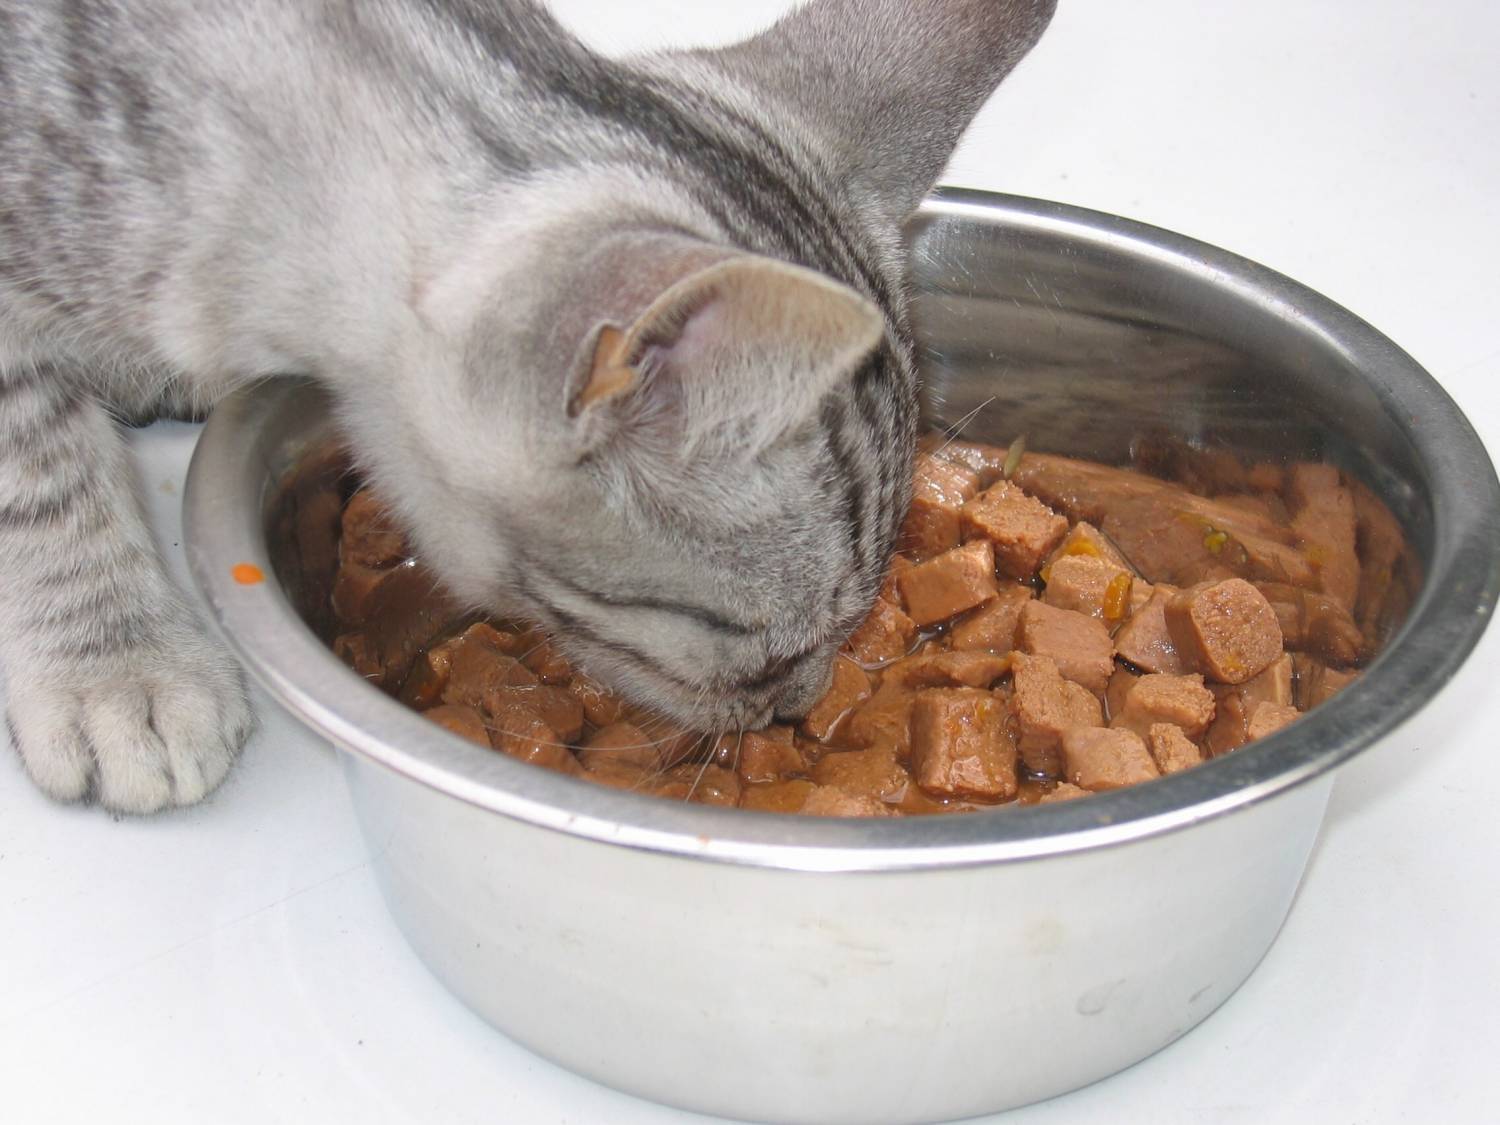 Можно ли кормить кошку только влажным кормом: факты и мнения специалистов